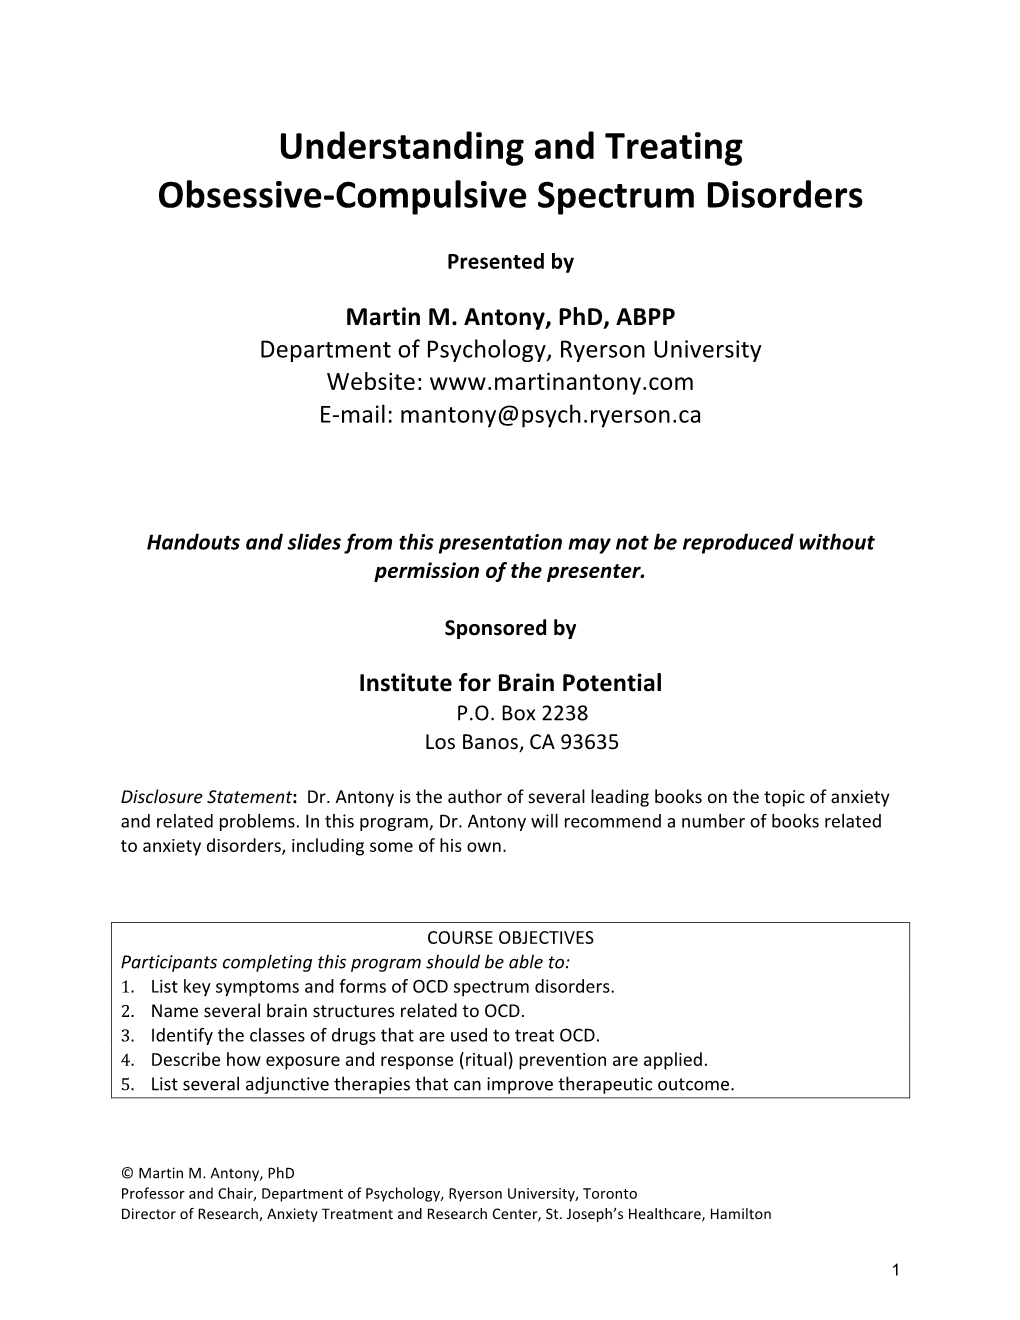 Compulsive Spectrum Disorders